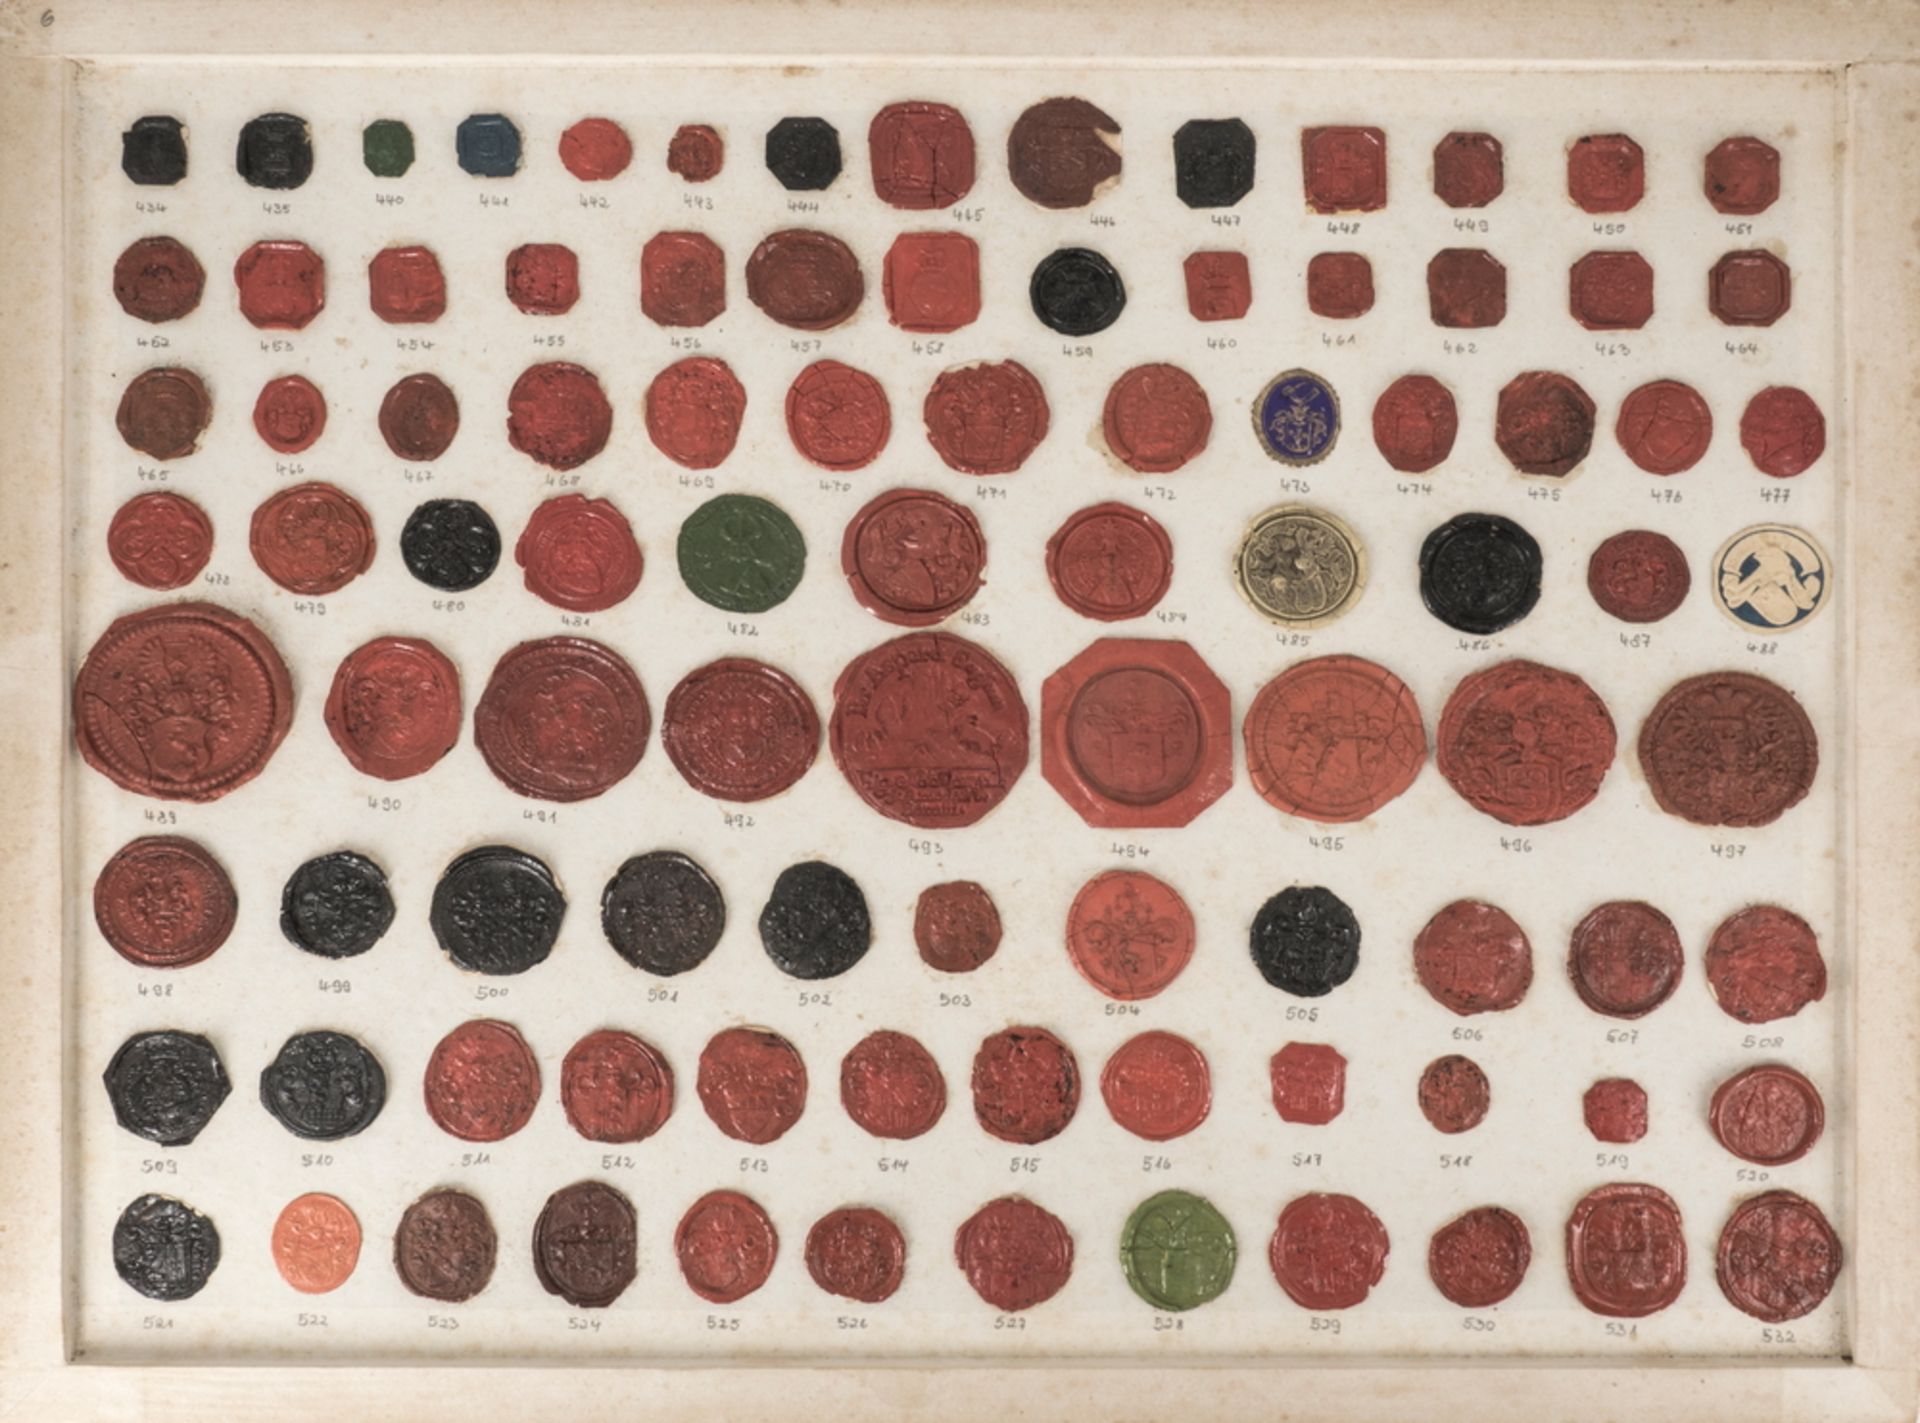 Sammlung verschiedener Siegel aus Auflösung einer riesigen Siegelsammlung.